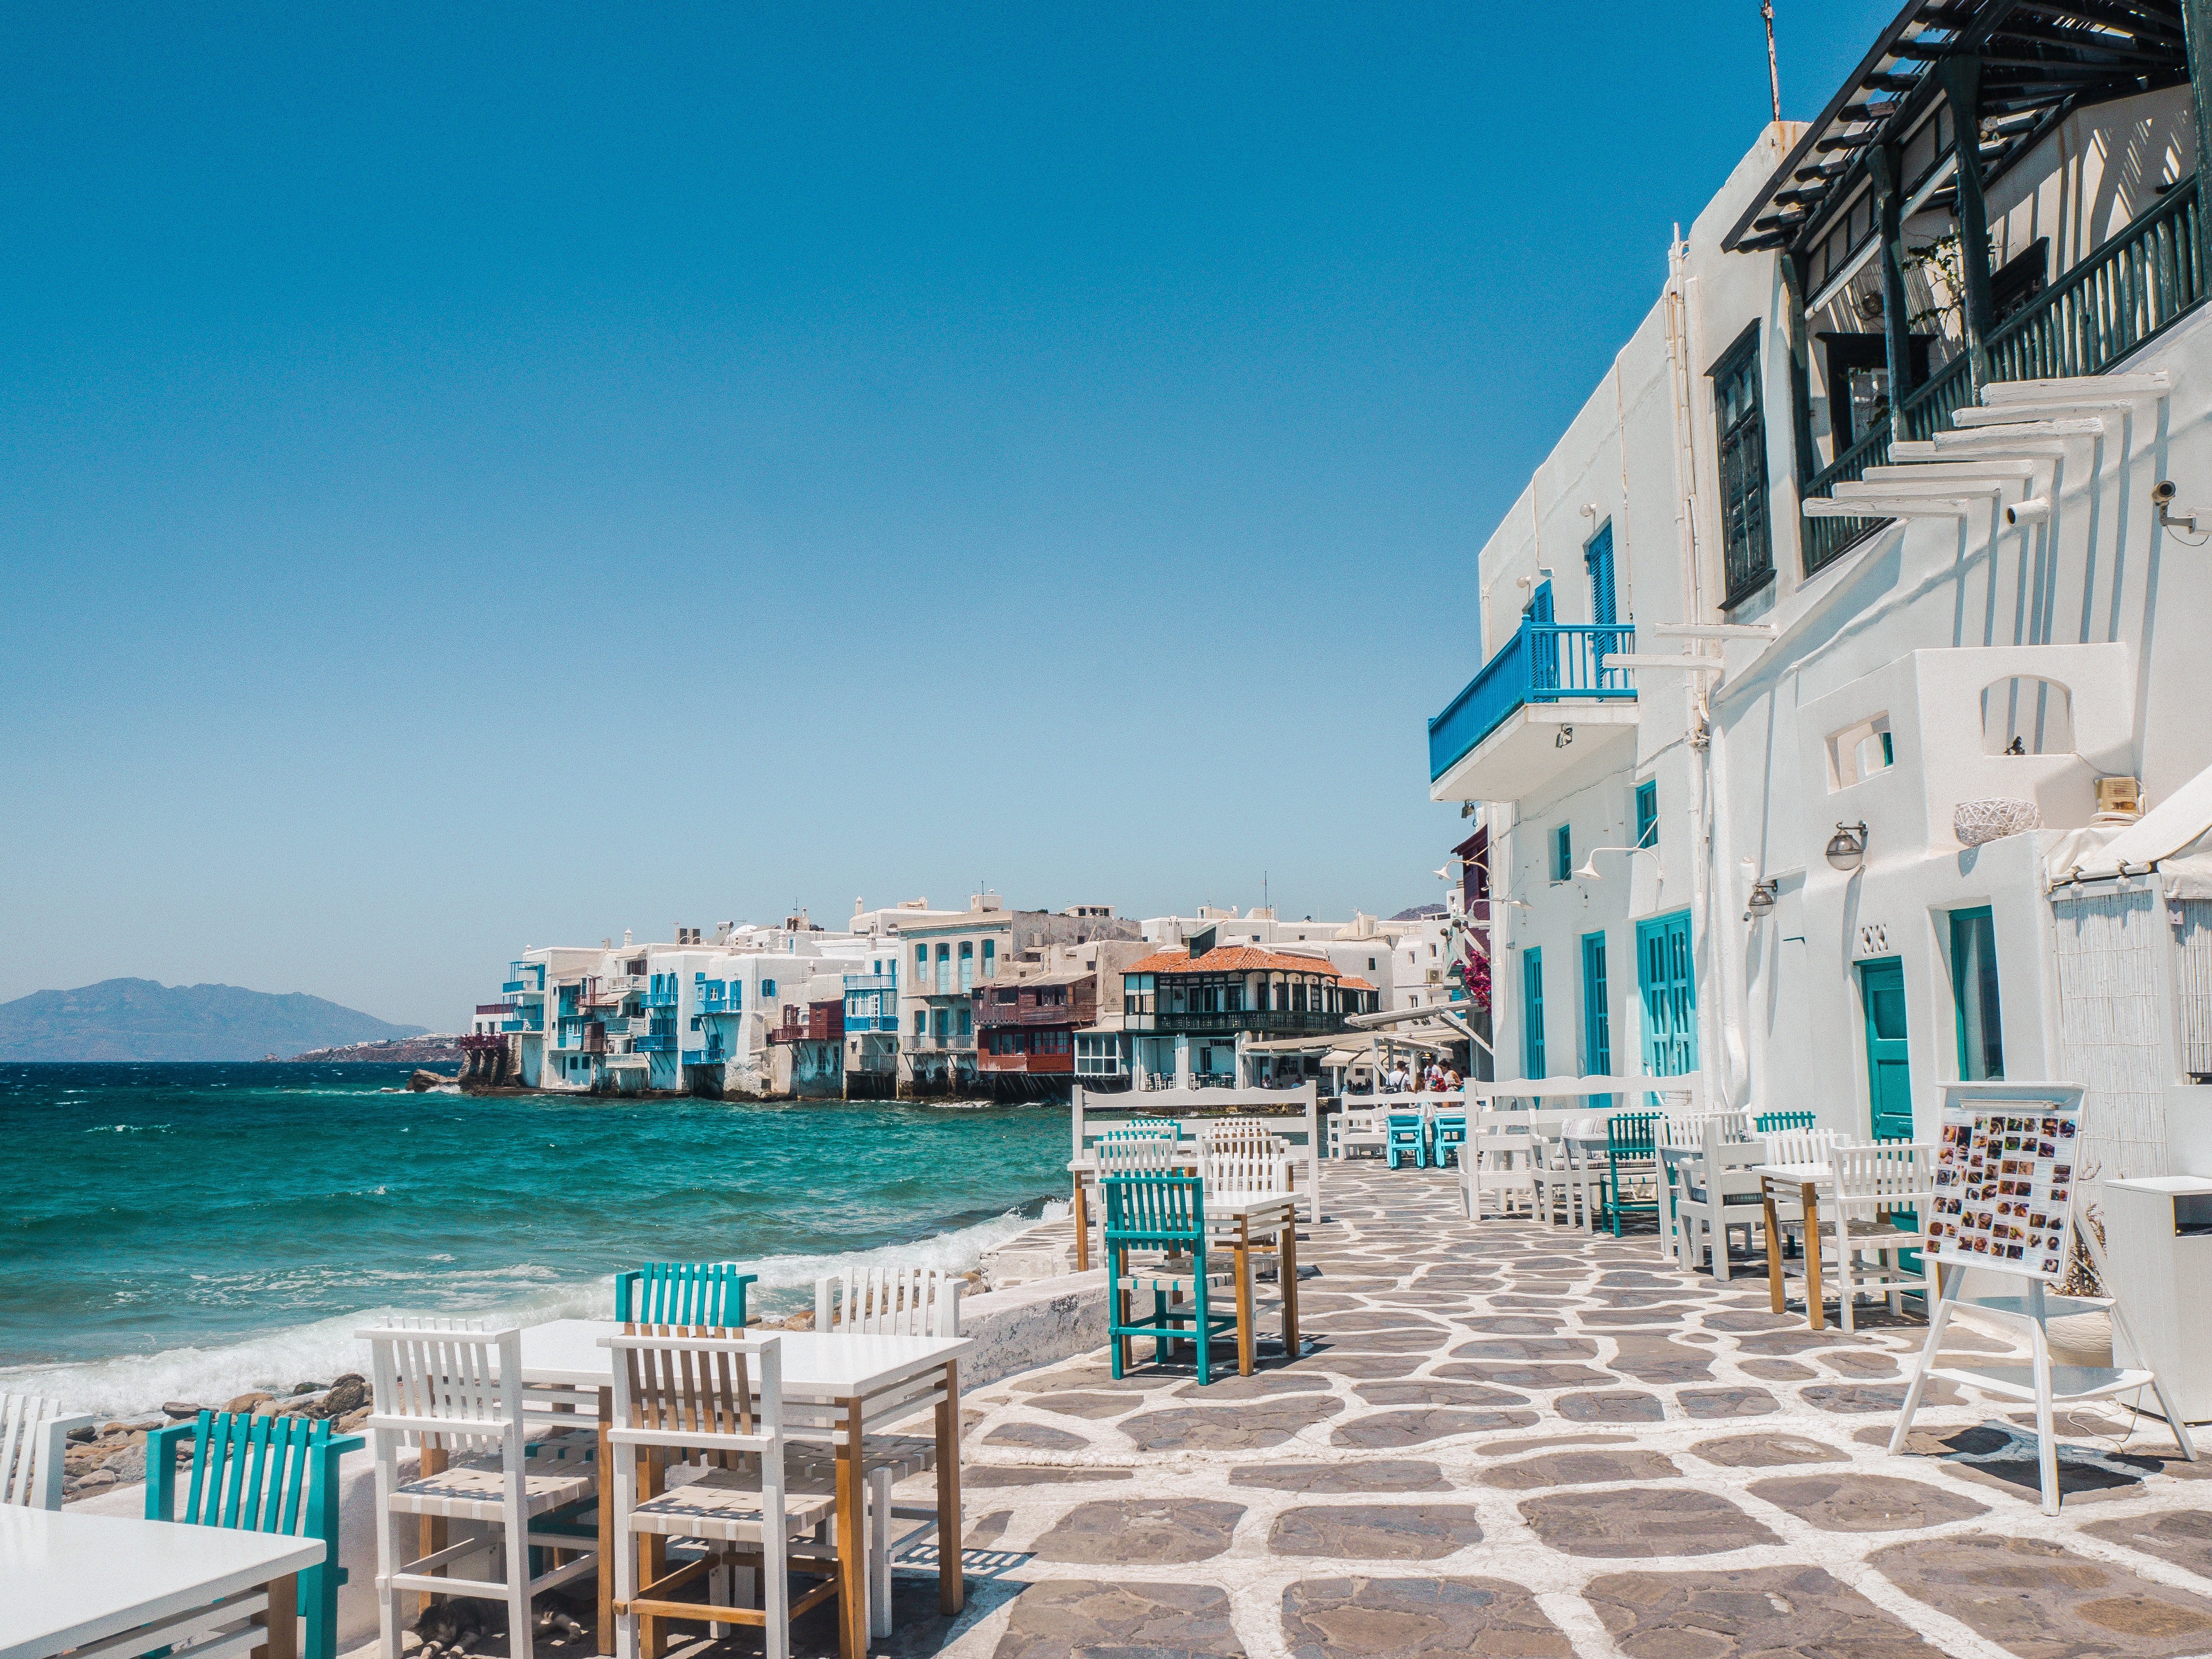 Οι καλύτερες παραλίες για το 2023 στην Ελλάδα σύμφωνα με τη γαλλική Vogue